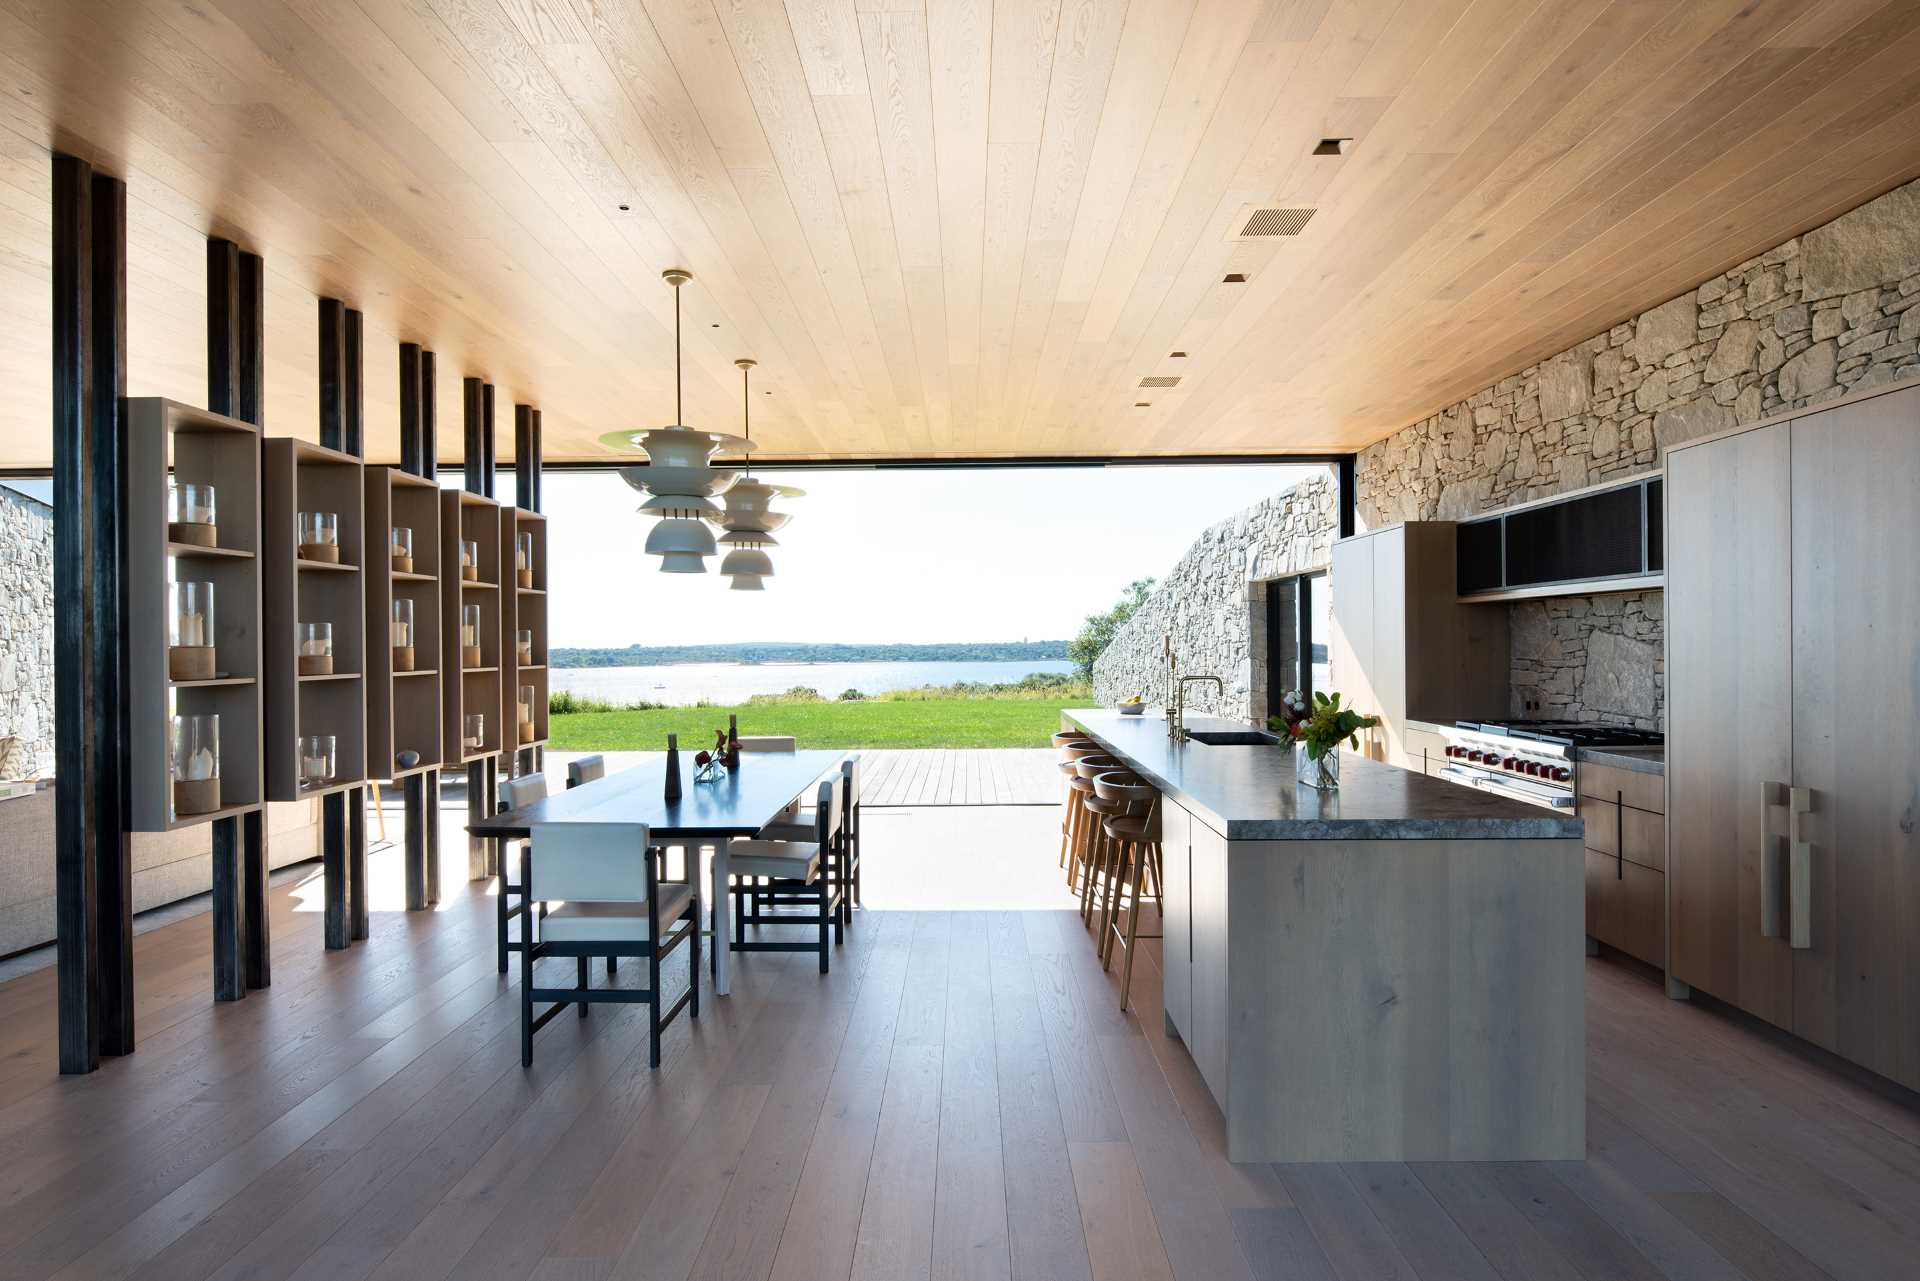 آشپزخانه ای مدرن با دیوار سنگی که از داخل به بیرون خانه می رود.